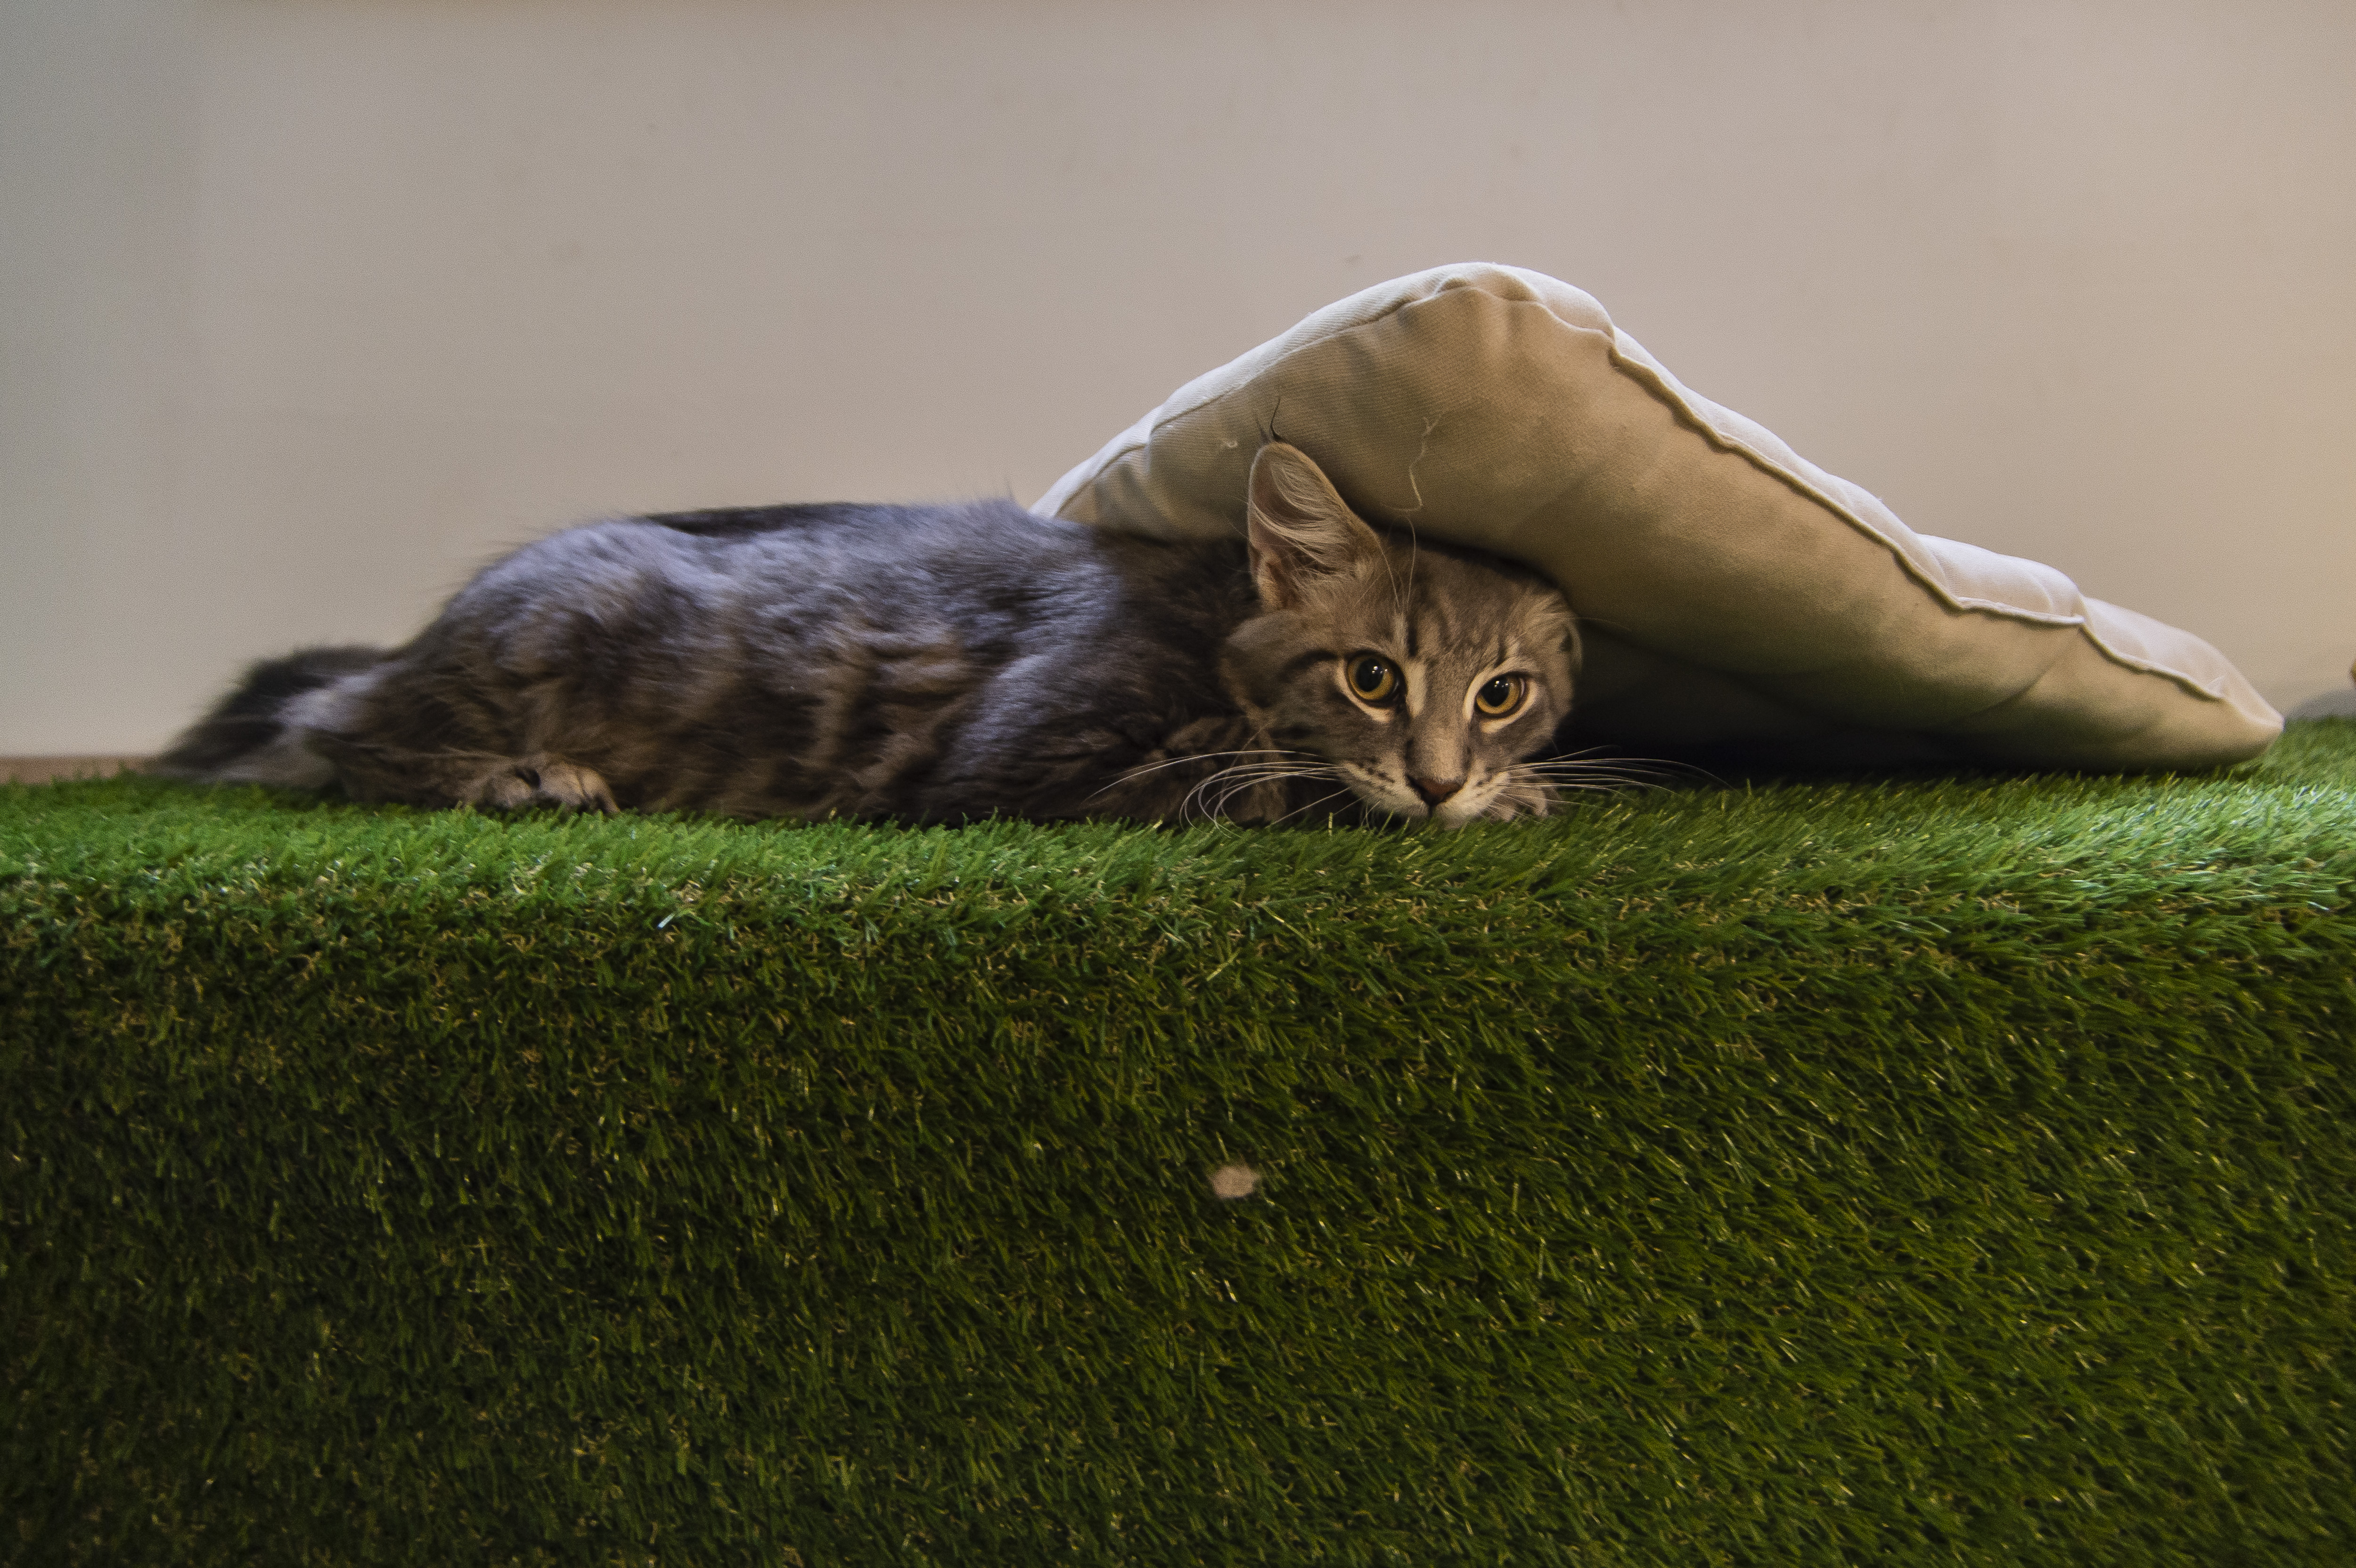 Puha tappancsok, megnyugtató dorombolás, 100% cicaság – A Cat Museum Budapestben jártunk